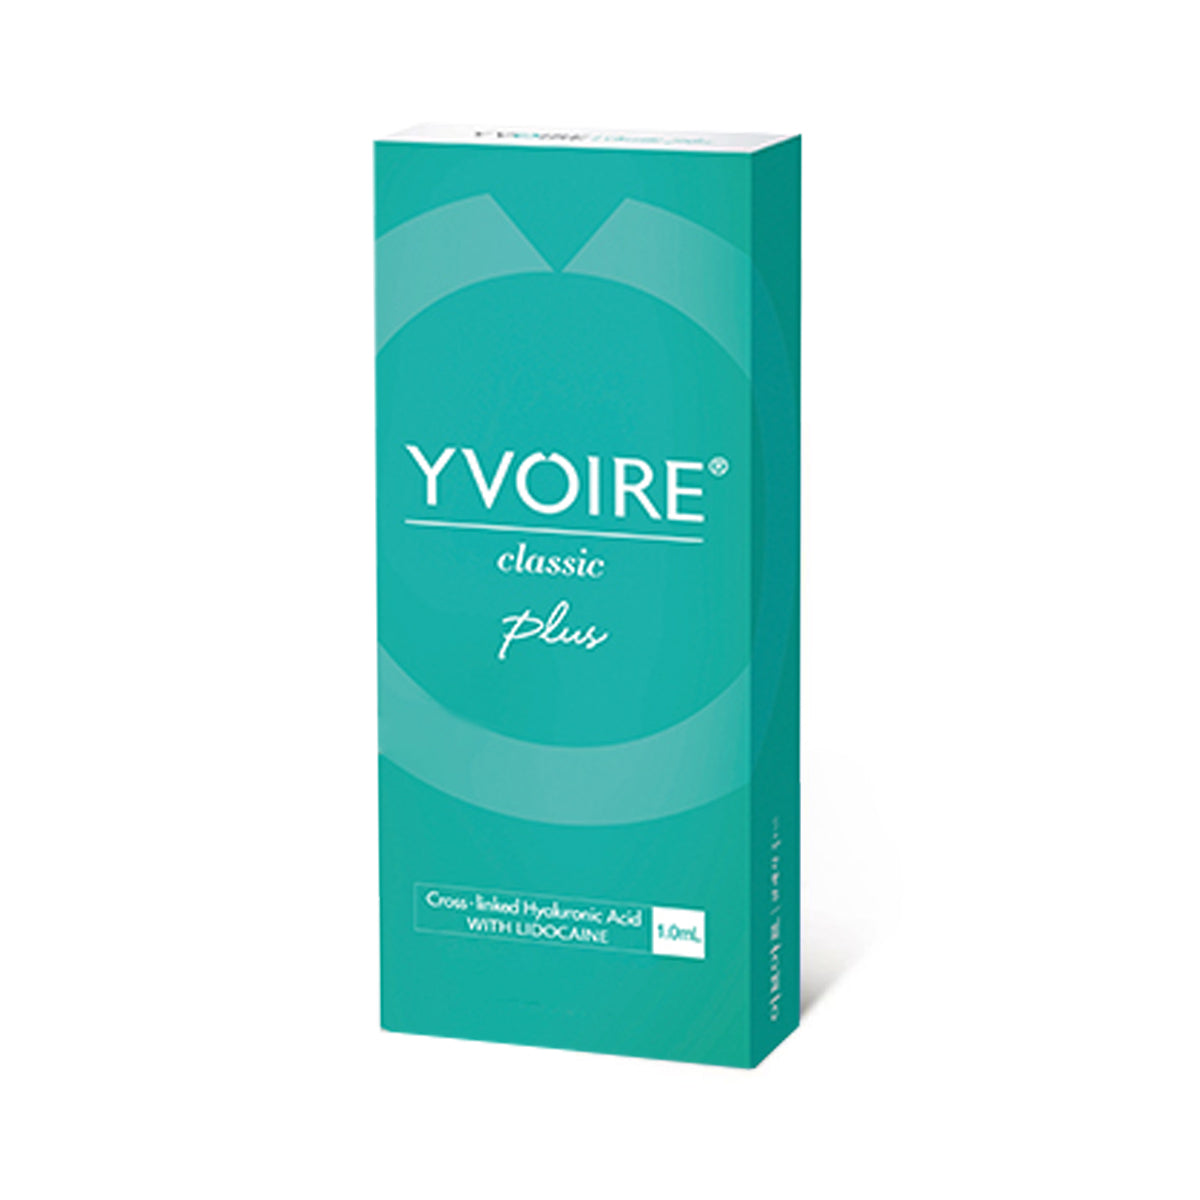 yvoire-classic-plus